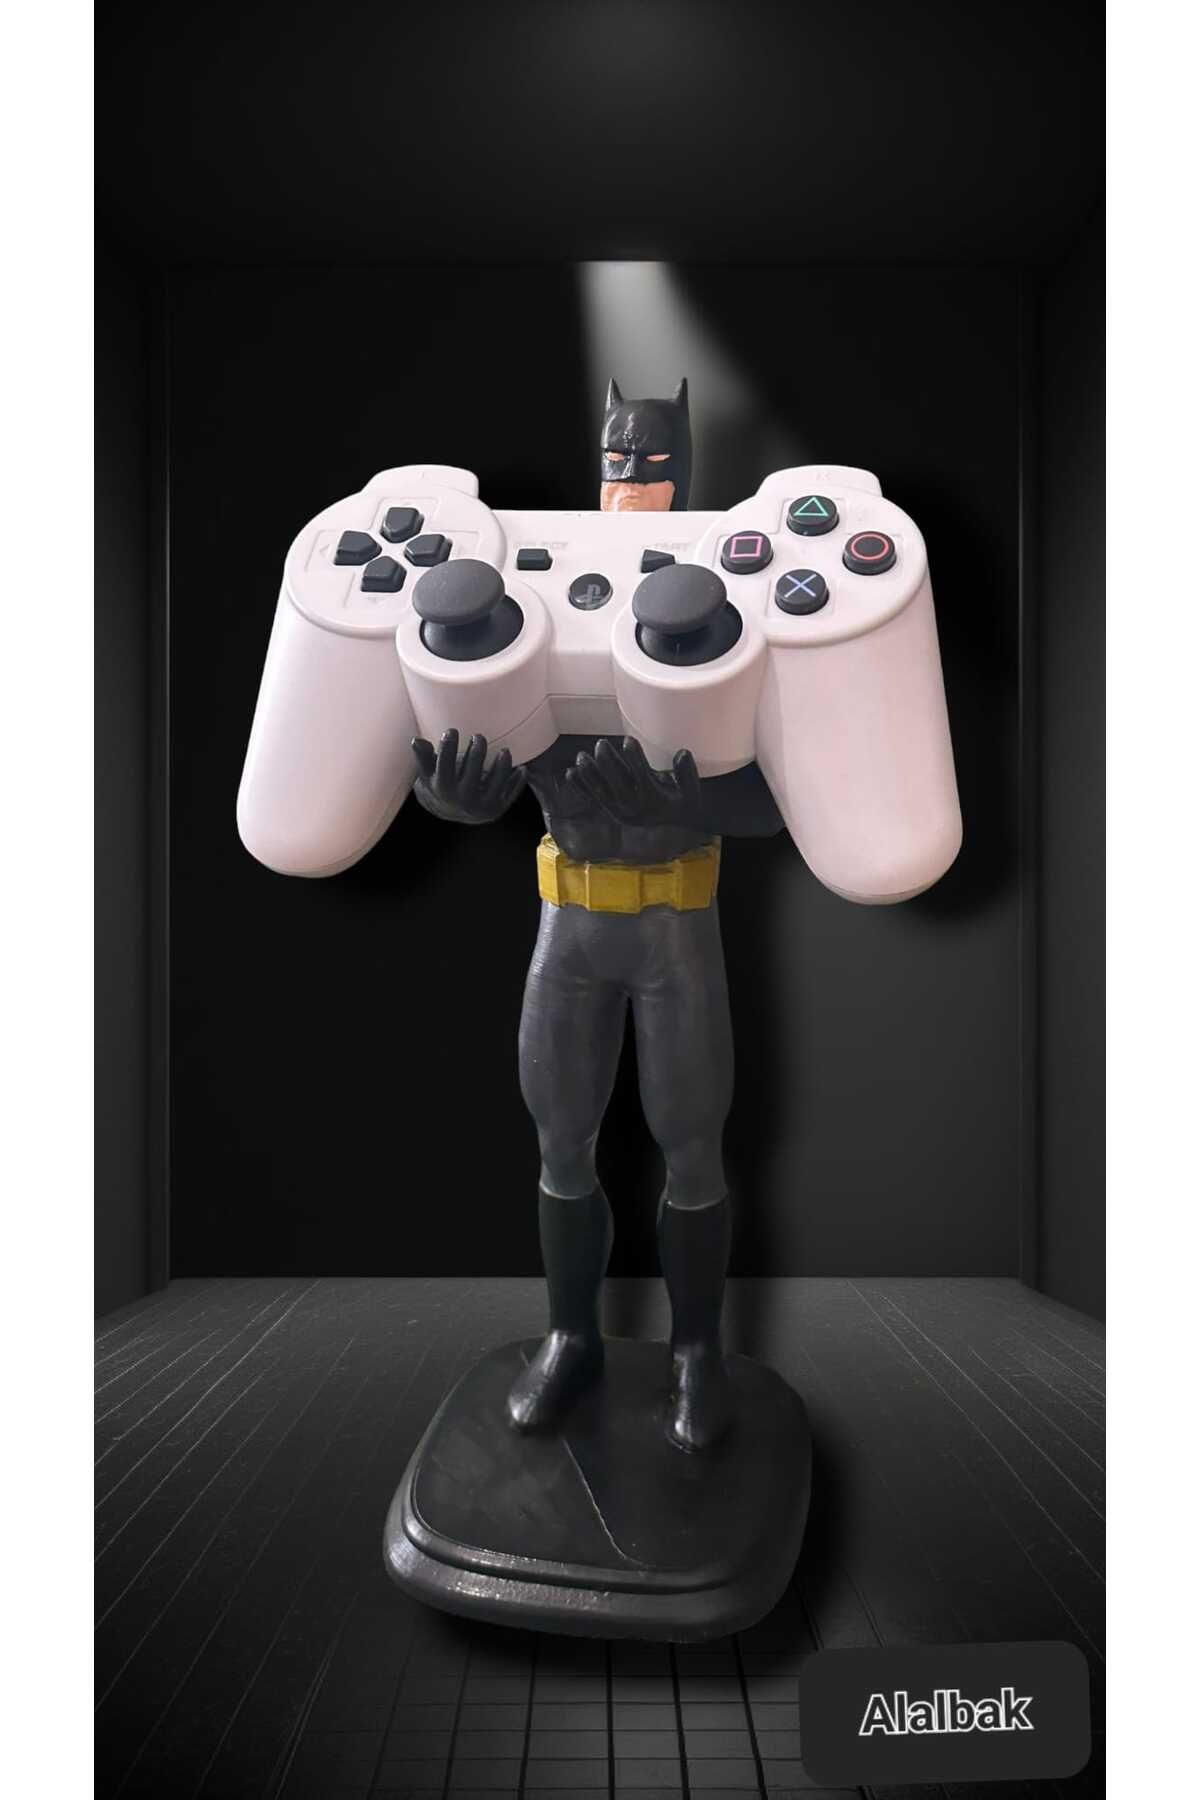 Alalbak Batman Joystick Kol Tutucu Playstation Konsol Tutucu Standı Batman Figürlü Joystick Tutucu